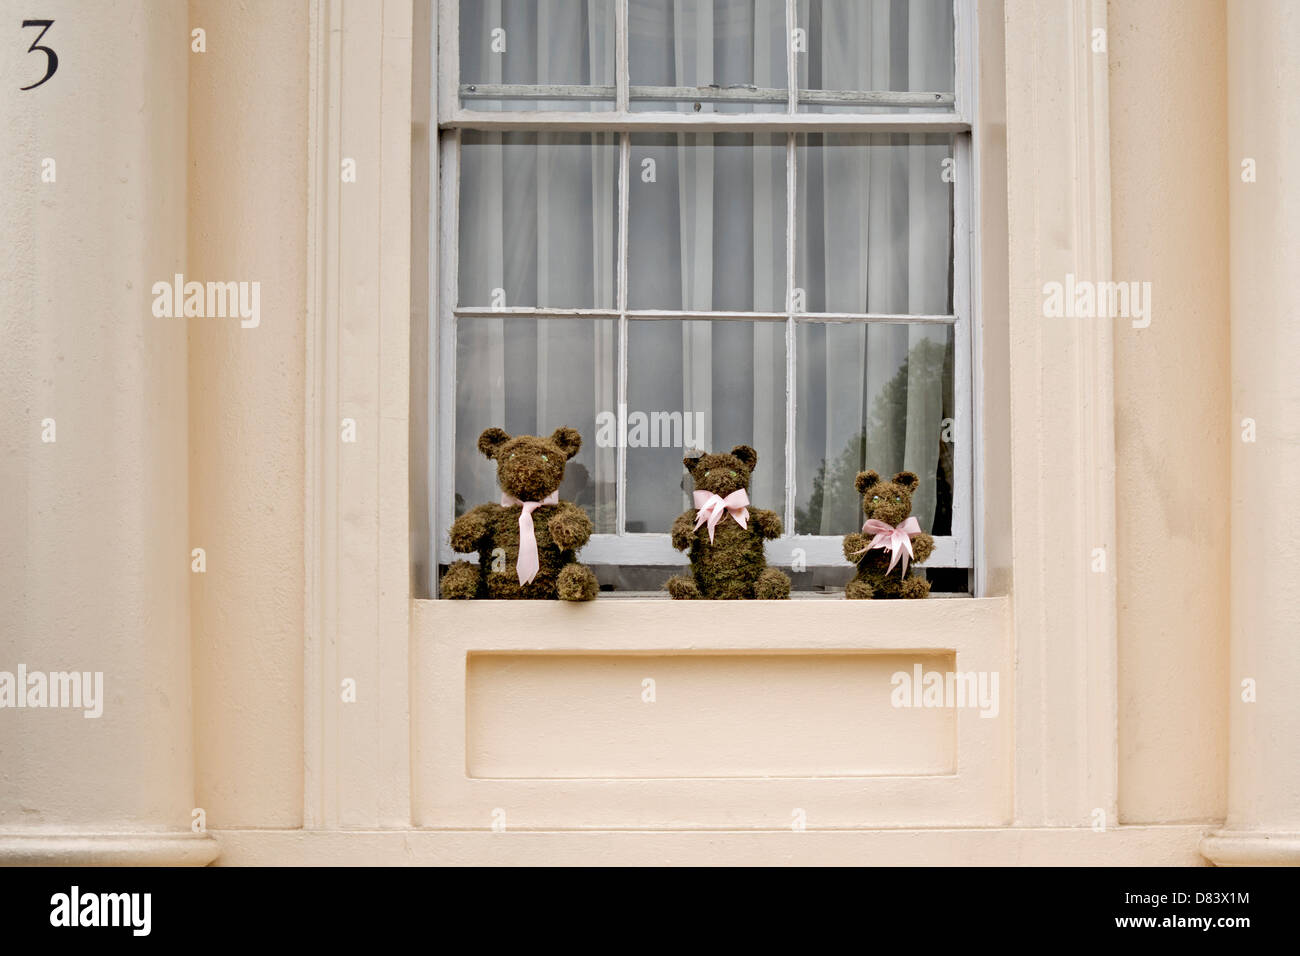 Trois ours en peluche assis sur un rebord de fenêtre Banque D'Images